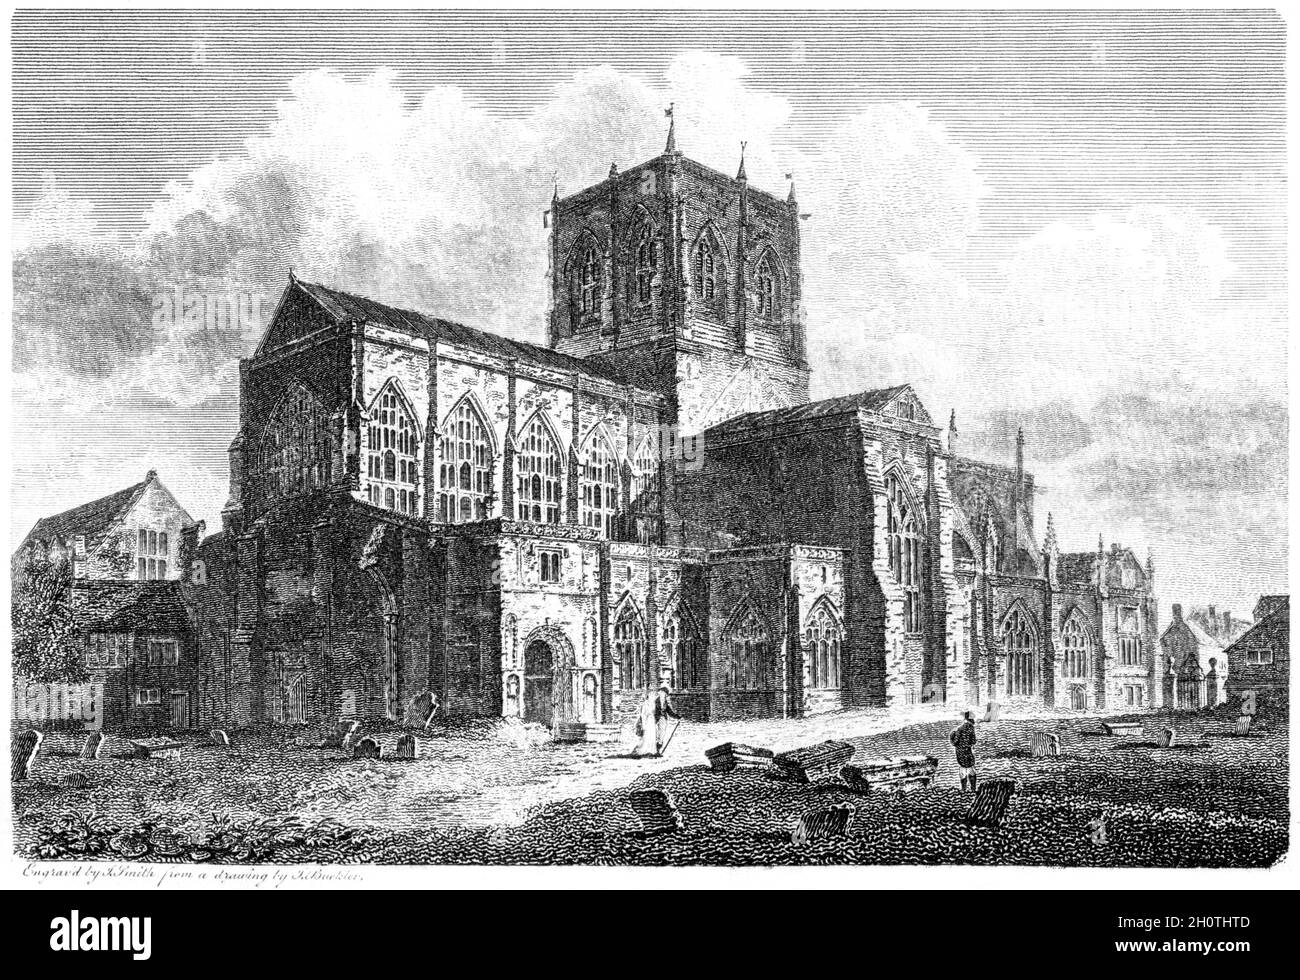 Ein Stich der St Marys Church, Sherborne, Dorsetshire UK, gescannt in hoher Auflösung aus einem Buch, das 1812 gedruckt wurde. Für urheberrechtlich frei gehalten. Stockfoto